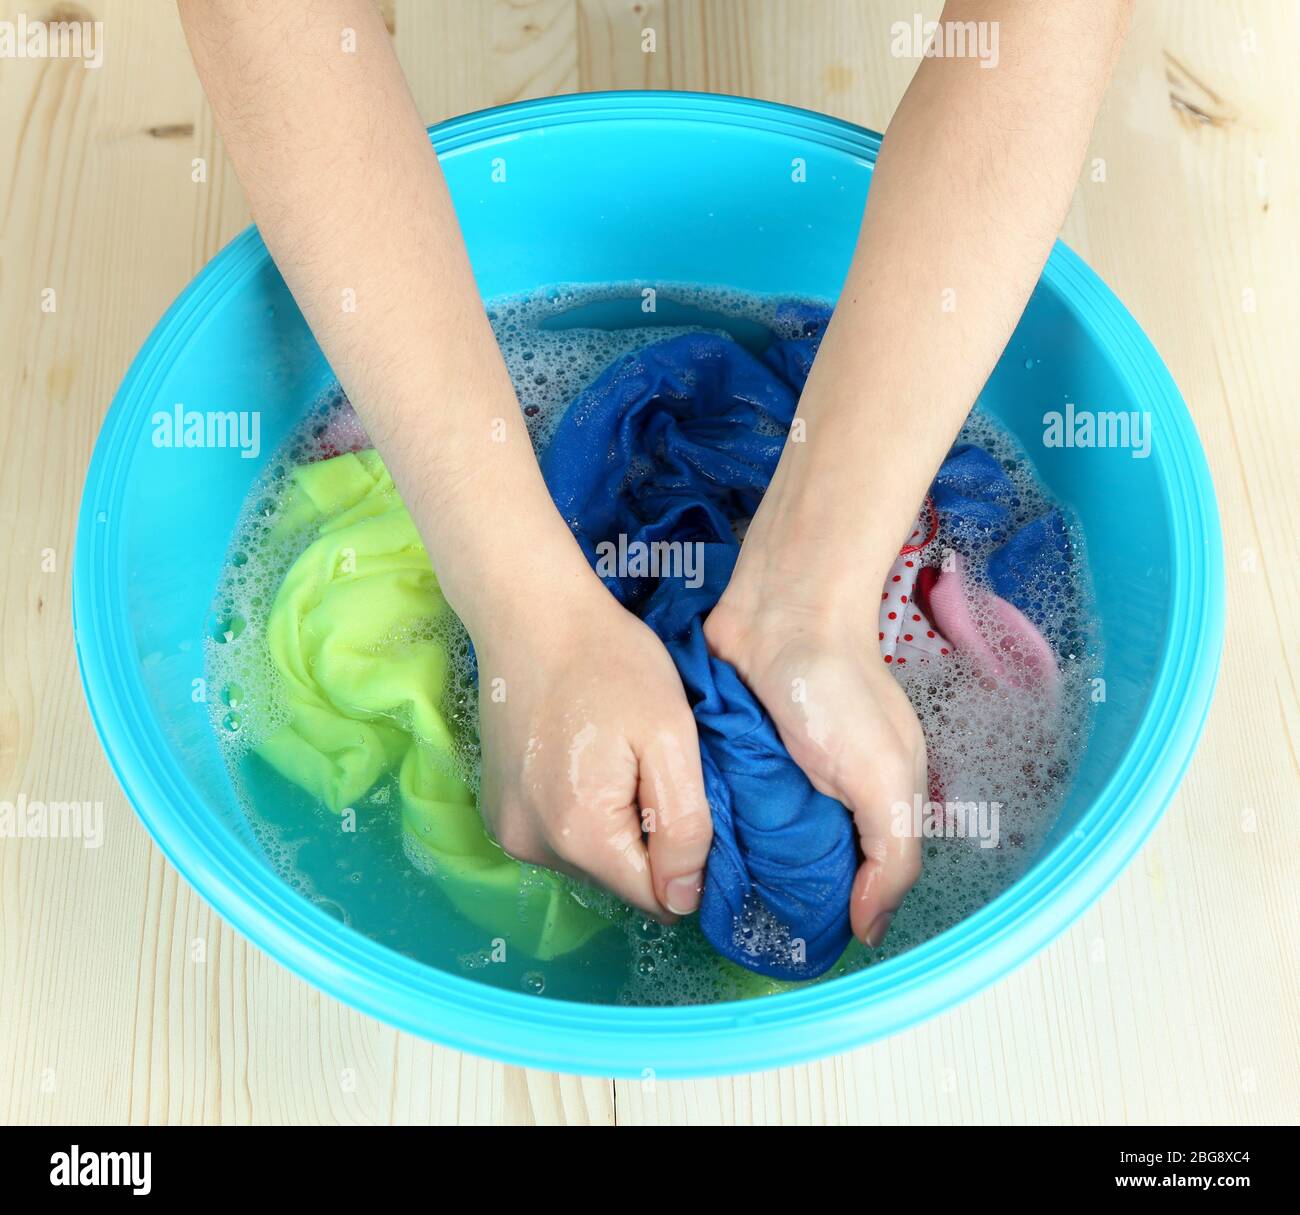 Стирка в холодной воде. Мыло для стирки. Цветная ткань стирка. Замачиваем цветную одежду. Эффект мытья порошком.